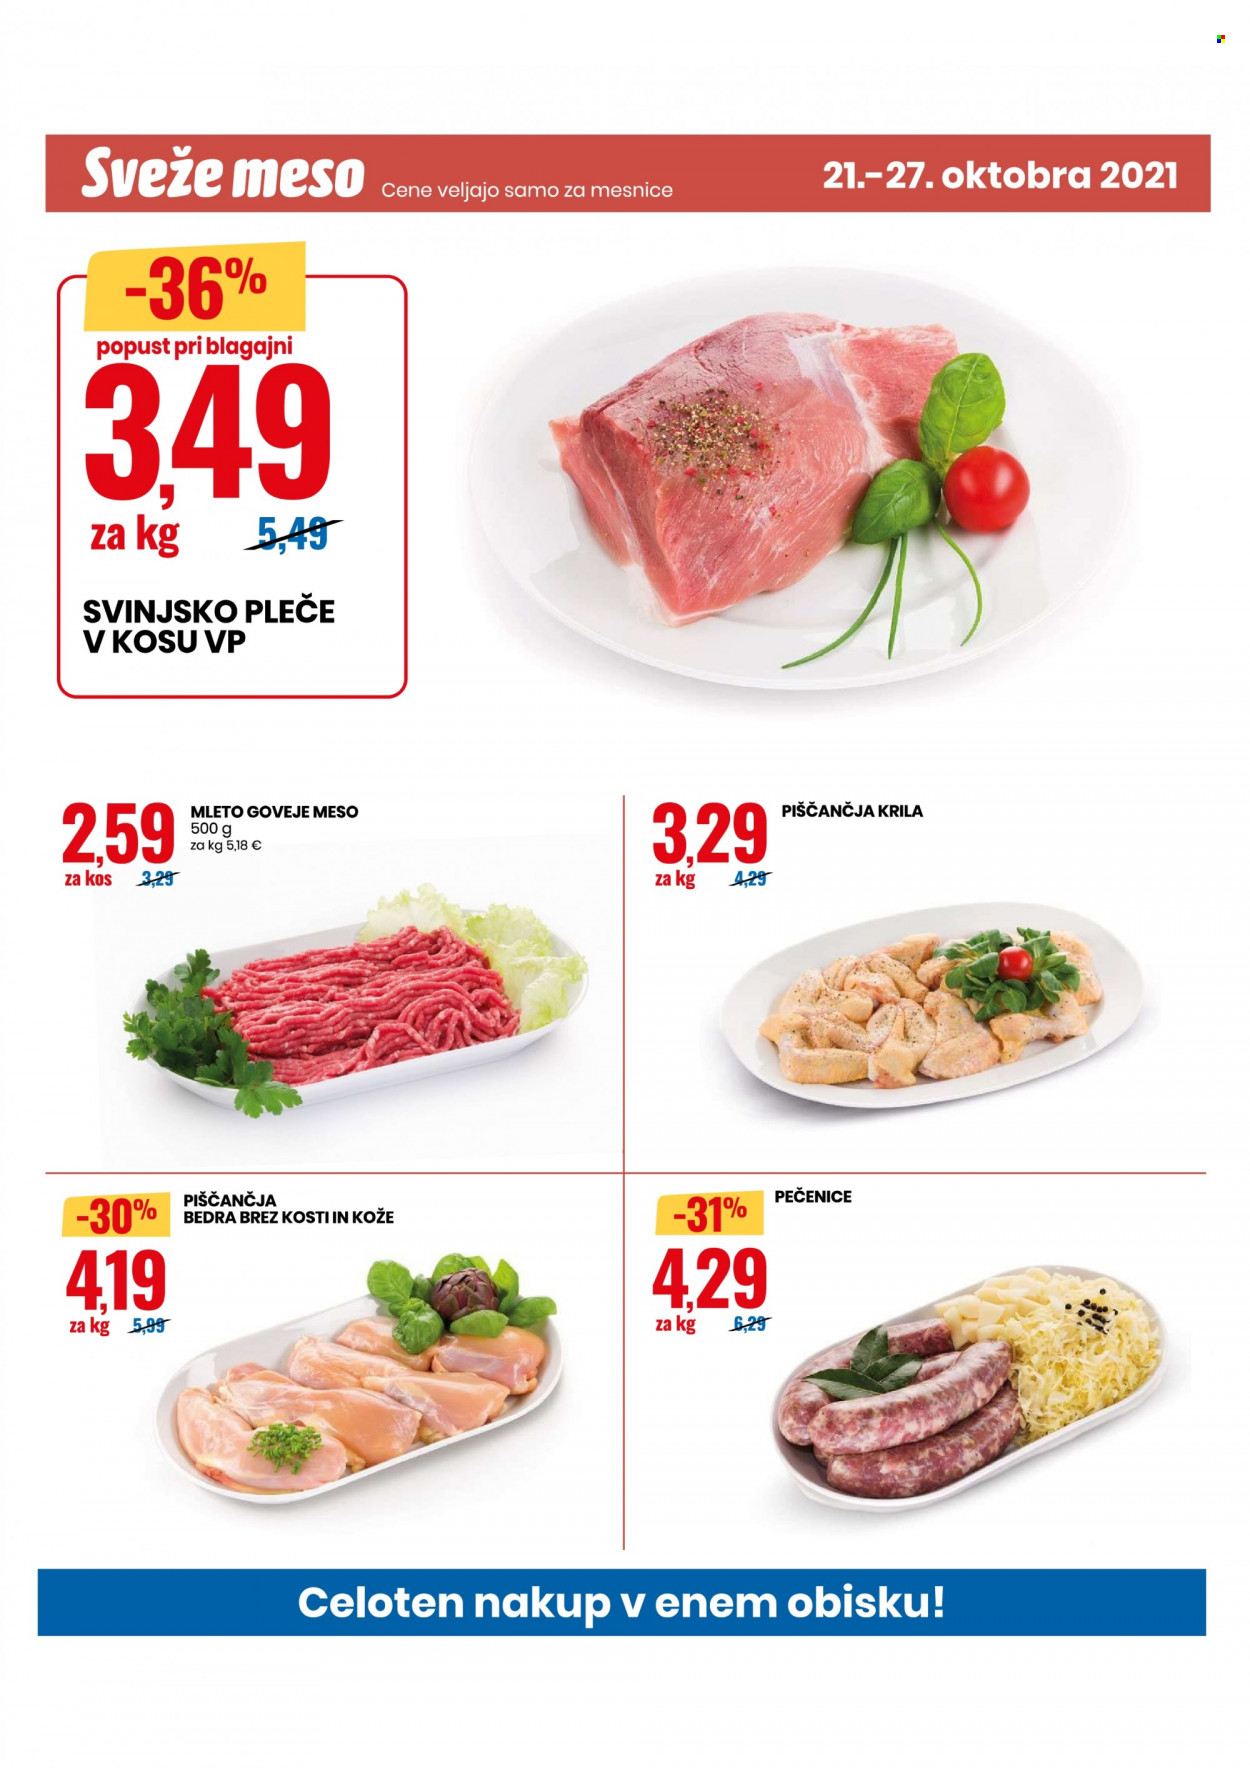 thumbnail - EuroSpin katalog - 21.10.2021 - 27.10.2021 - Ponudba izdelkov - piščančja bedra, piščančje peruti, piščančje meso, goveje meso, pleče, svinjsko pleče, svinjsko meso. Stran 8.